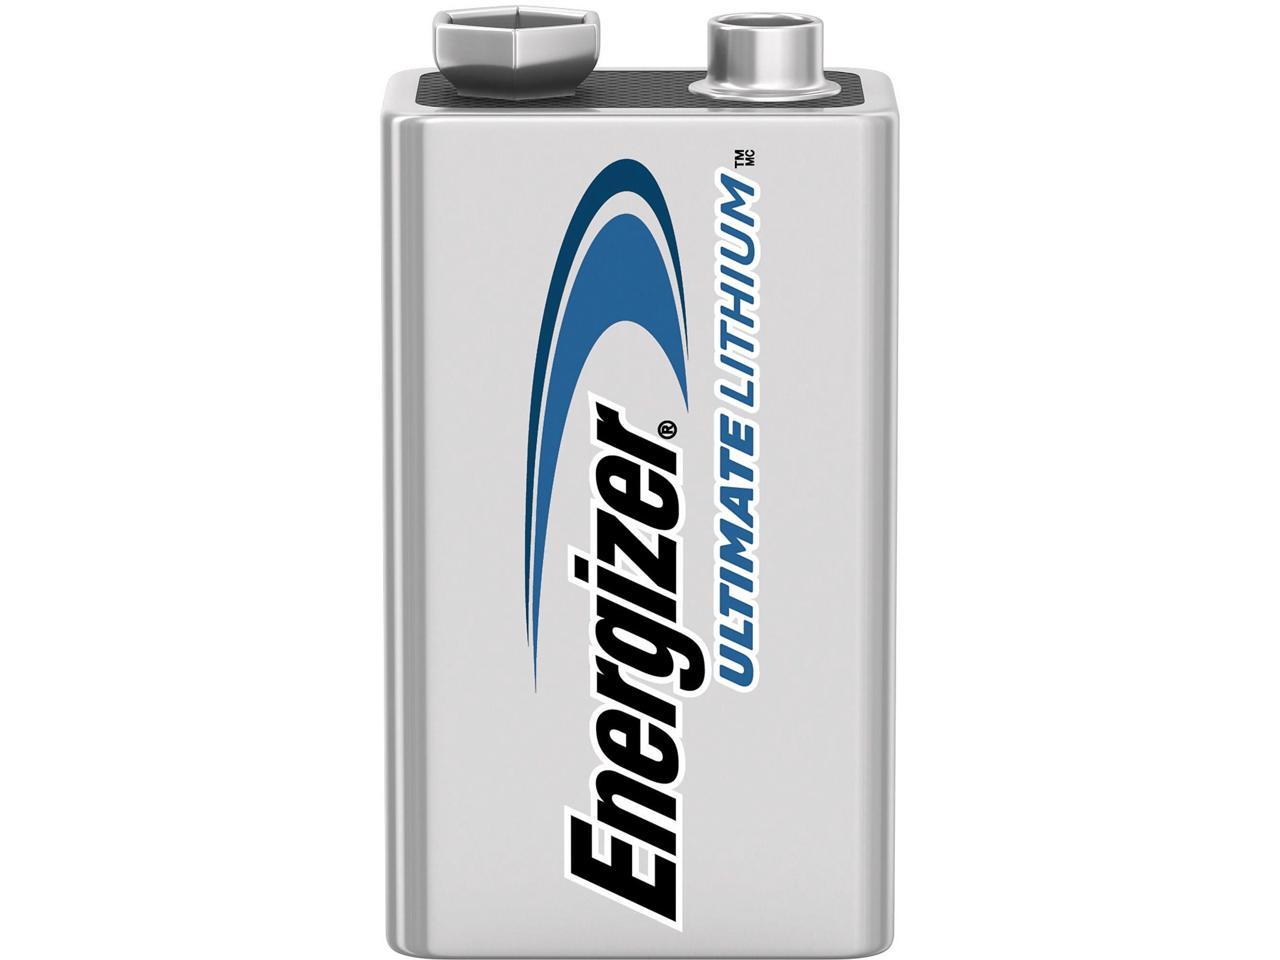 ENERGIZER Ultimate Lithium L522BP 9V Battery, 2-pack